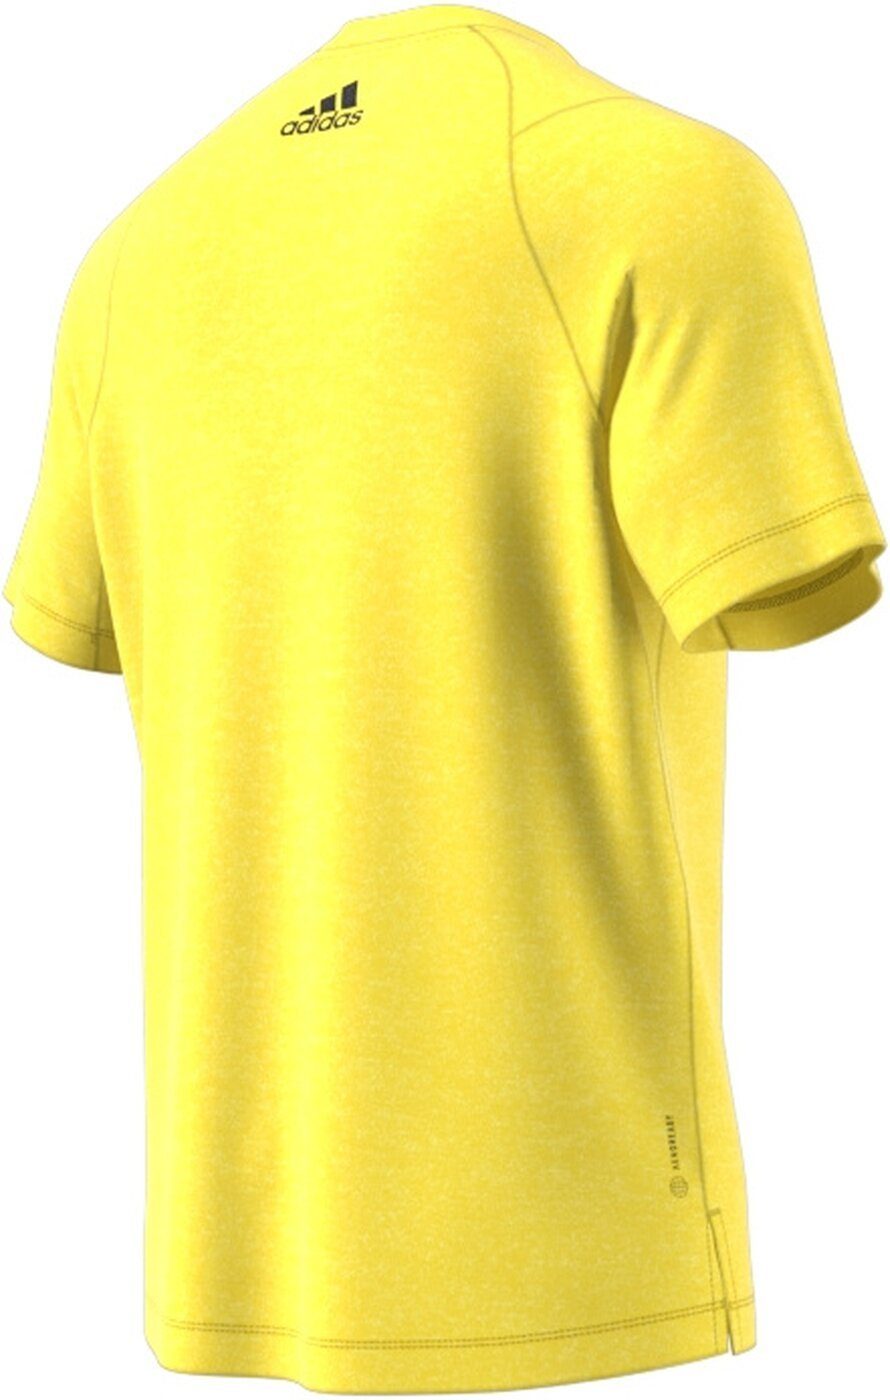 3BAR Sportswear TI T-Shirt adidas TEE